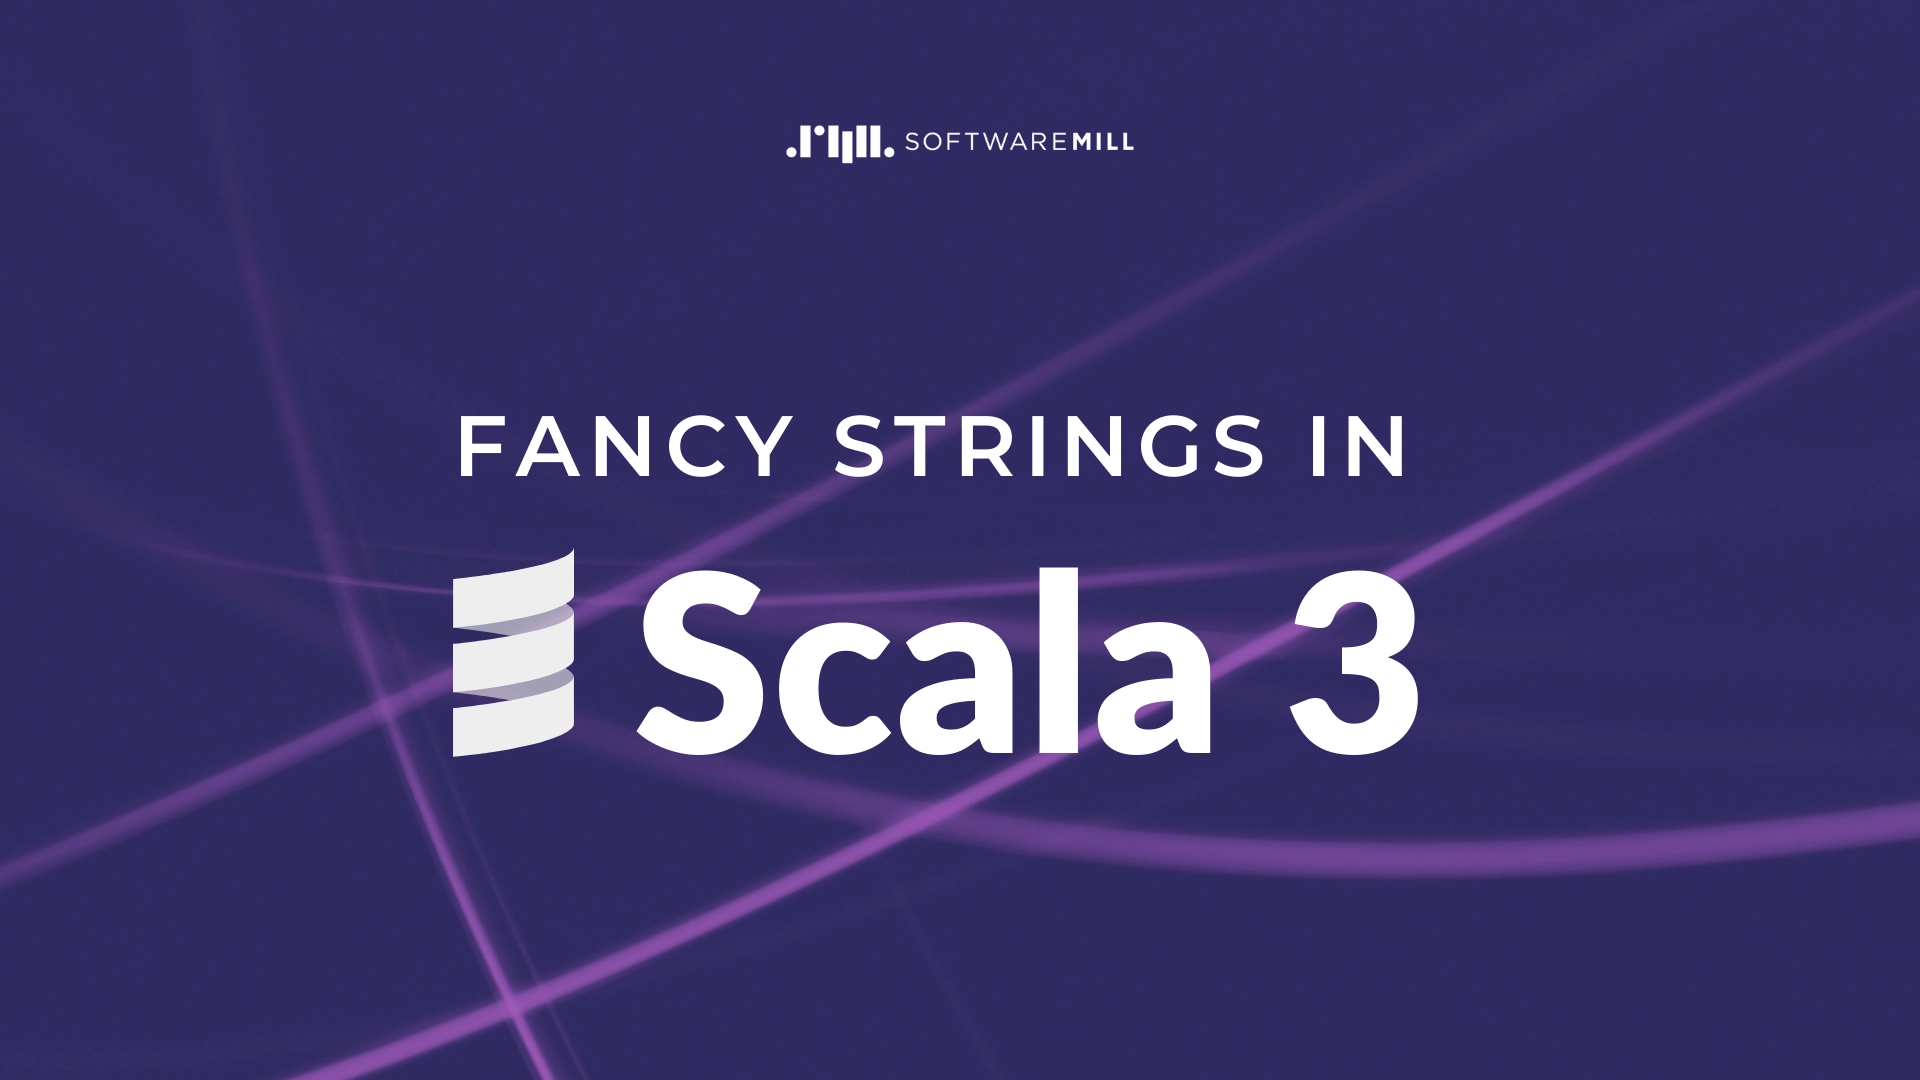 Fancy strings in Scala 3 webp image